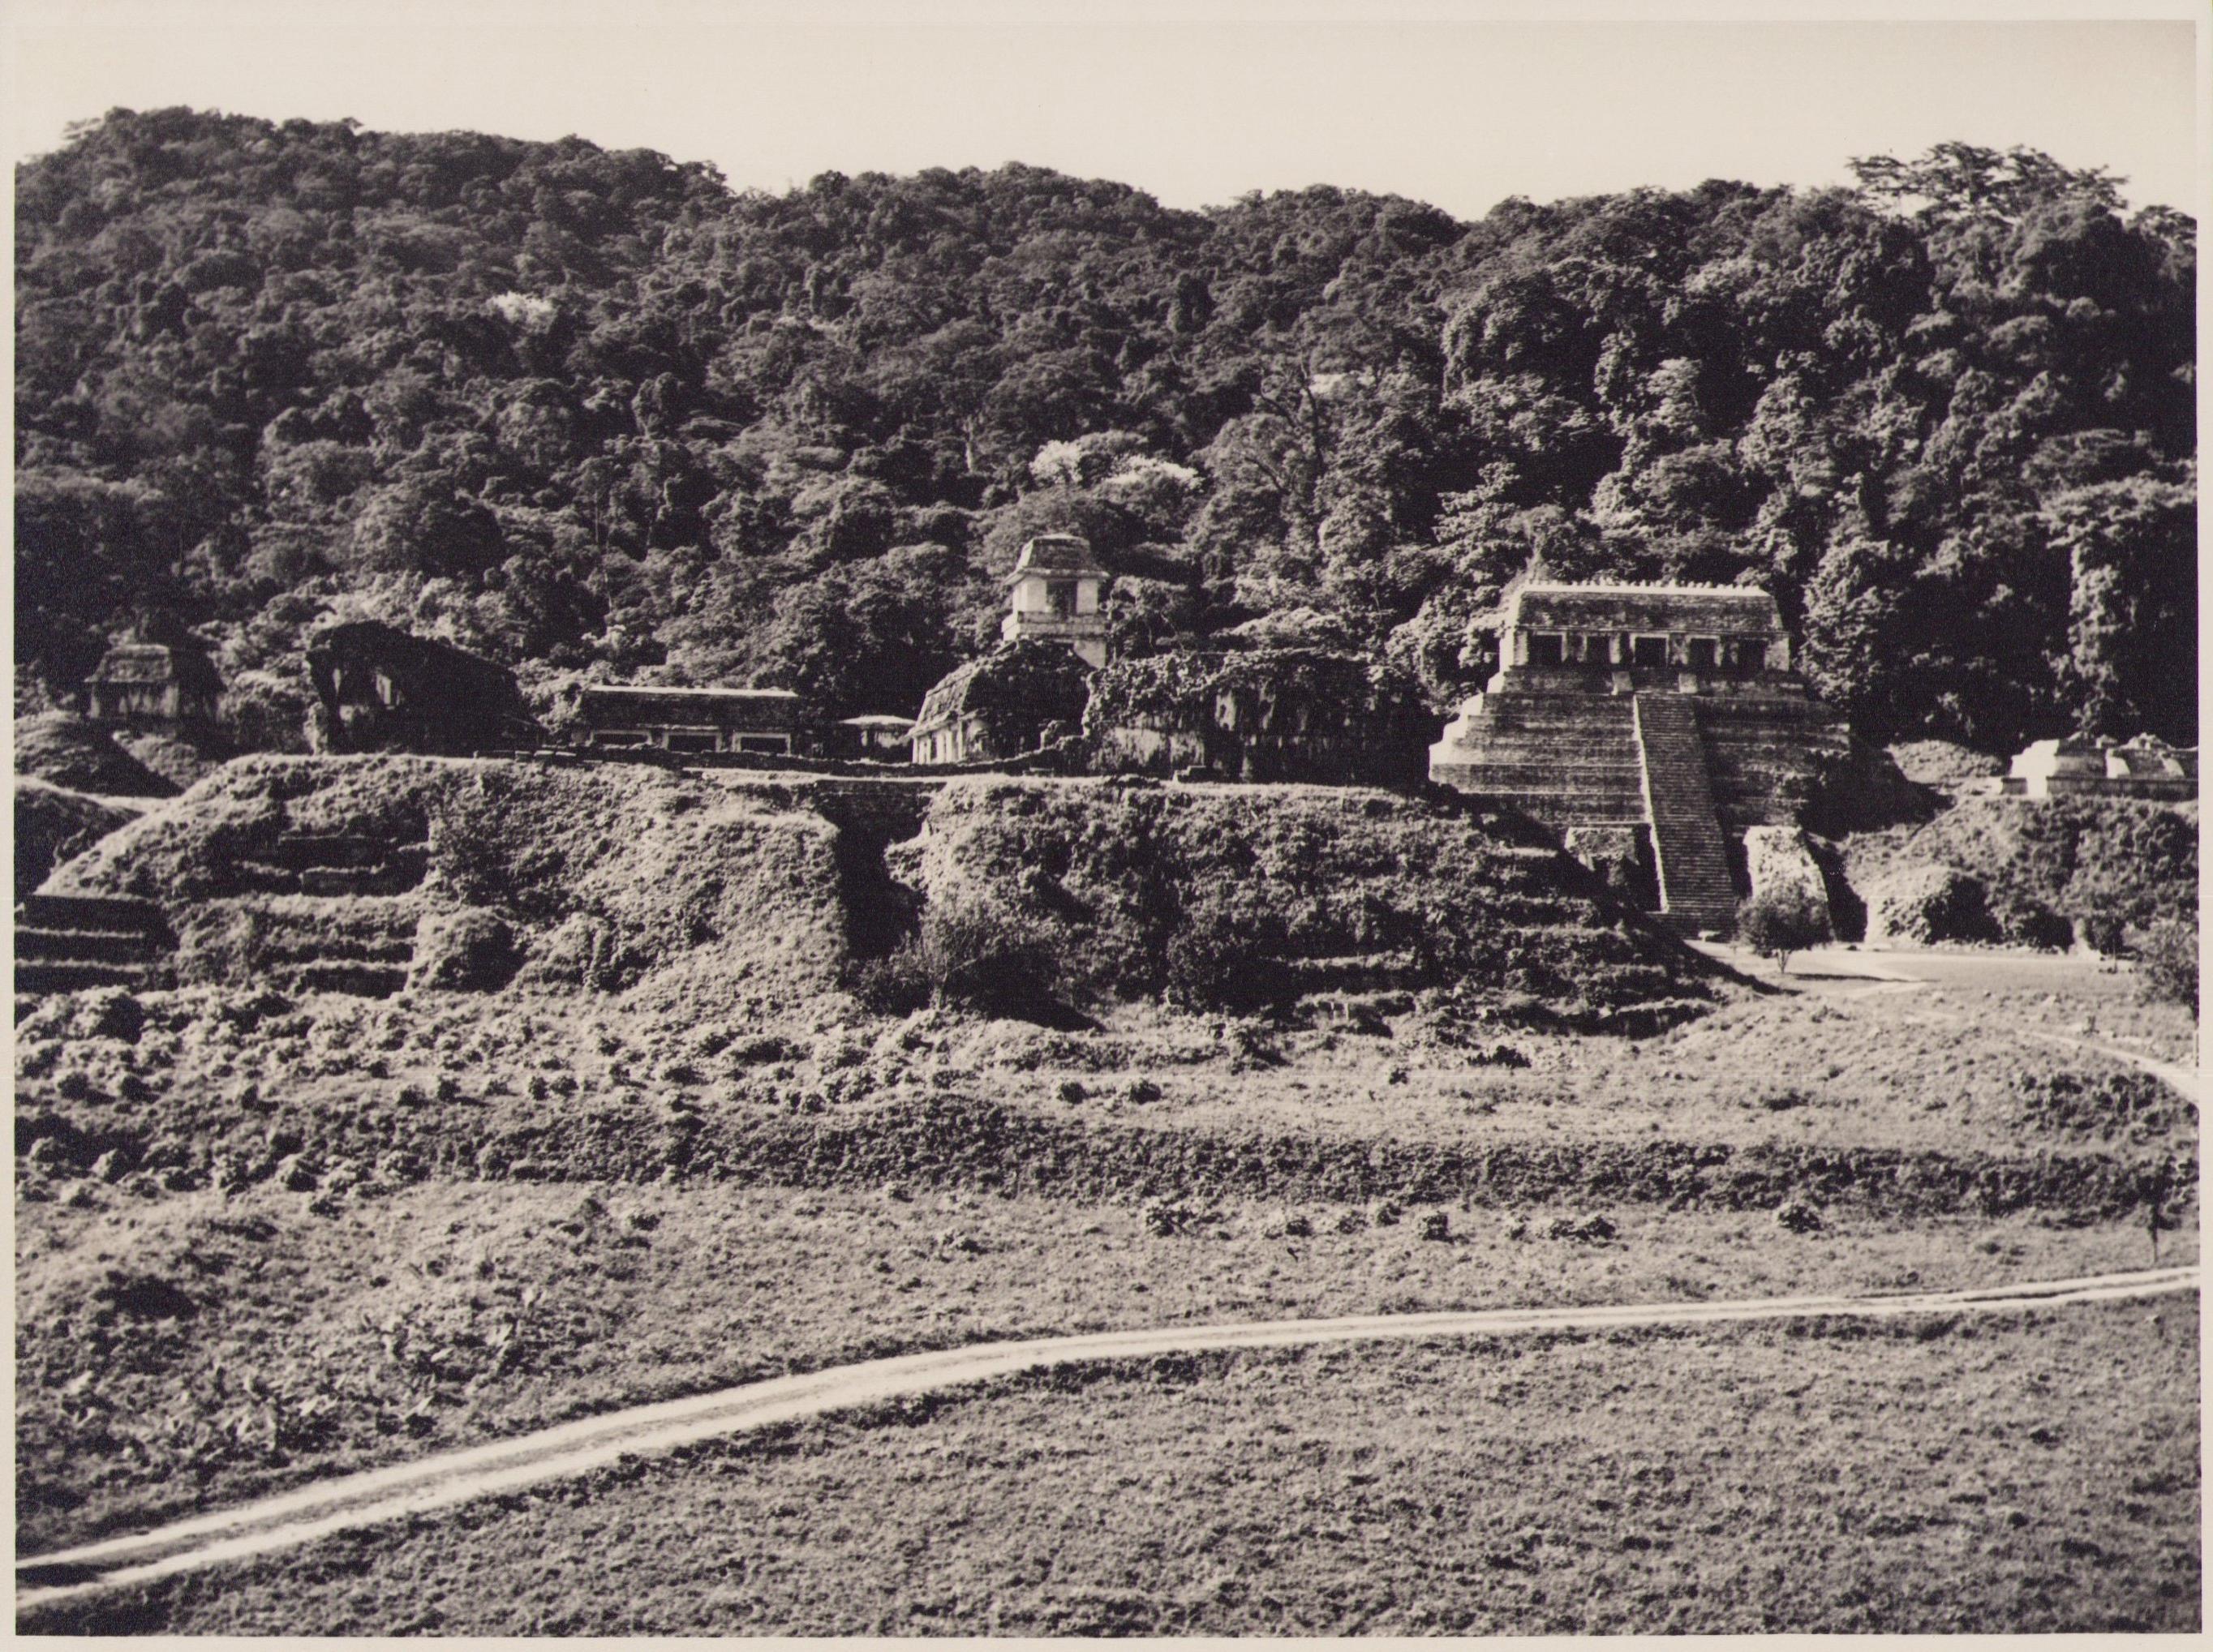 Mexique, Ruines, Maya, photographie en noir et blanc, annes 1960,17,3 x 23,2 cm